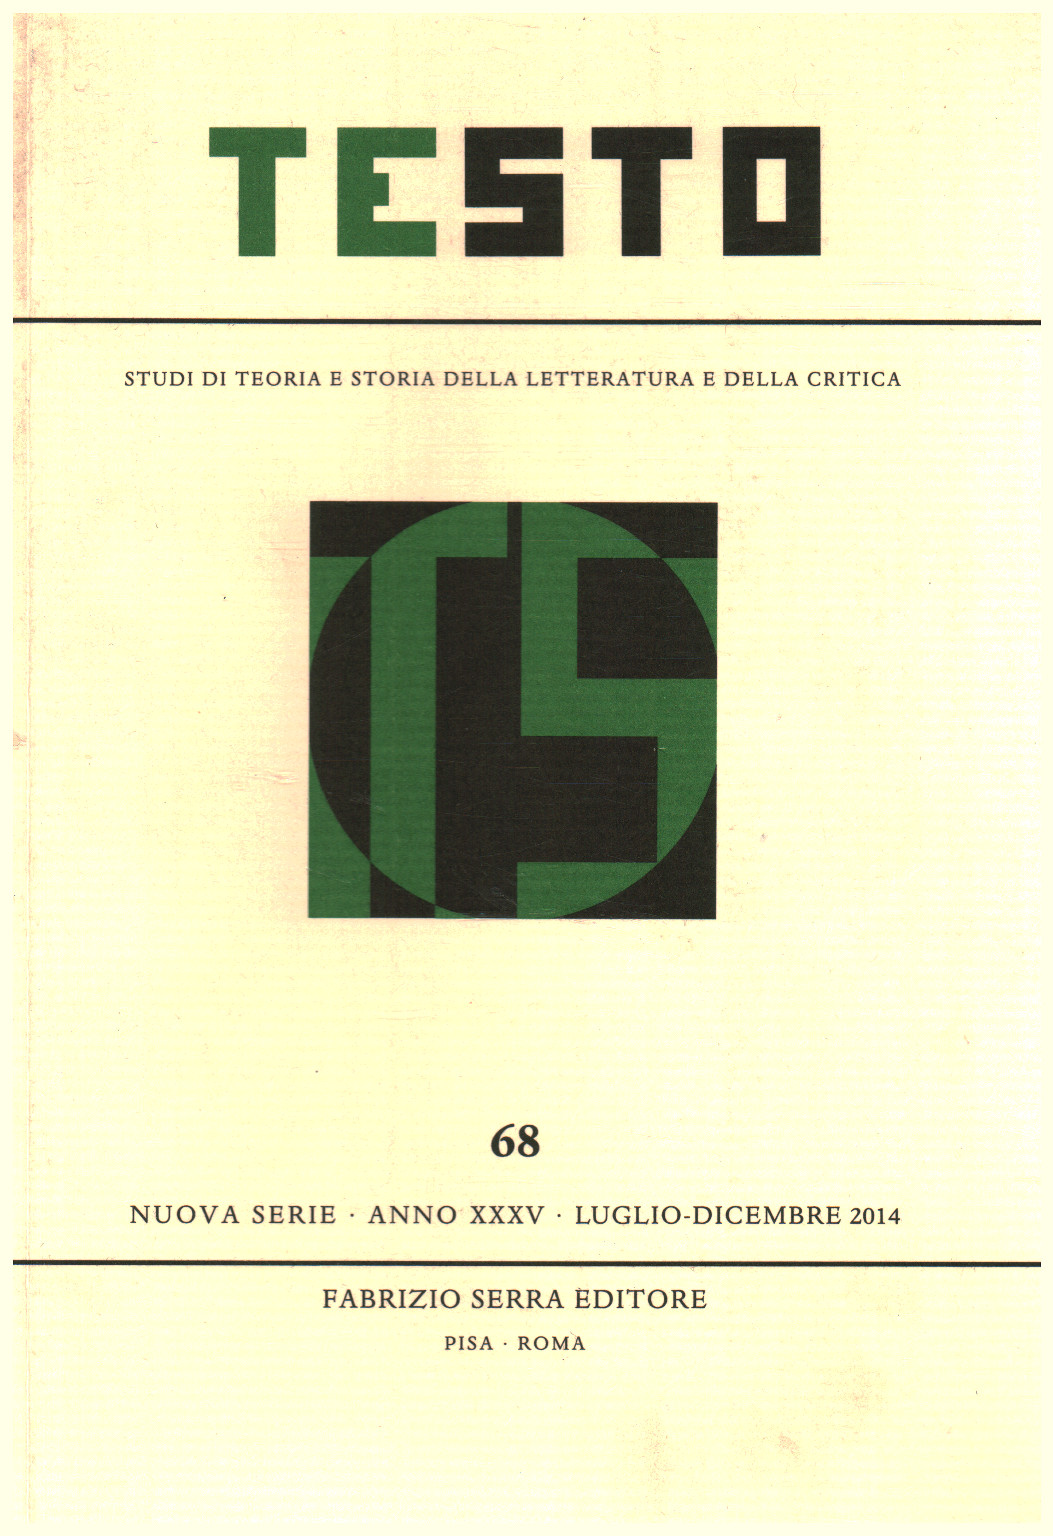 Text,68, Jahr XXXV, Juli-Dezember,2014, AA.VV